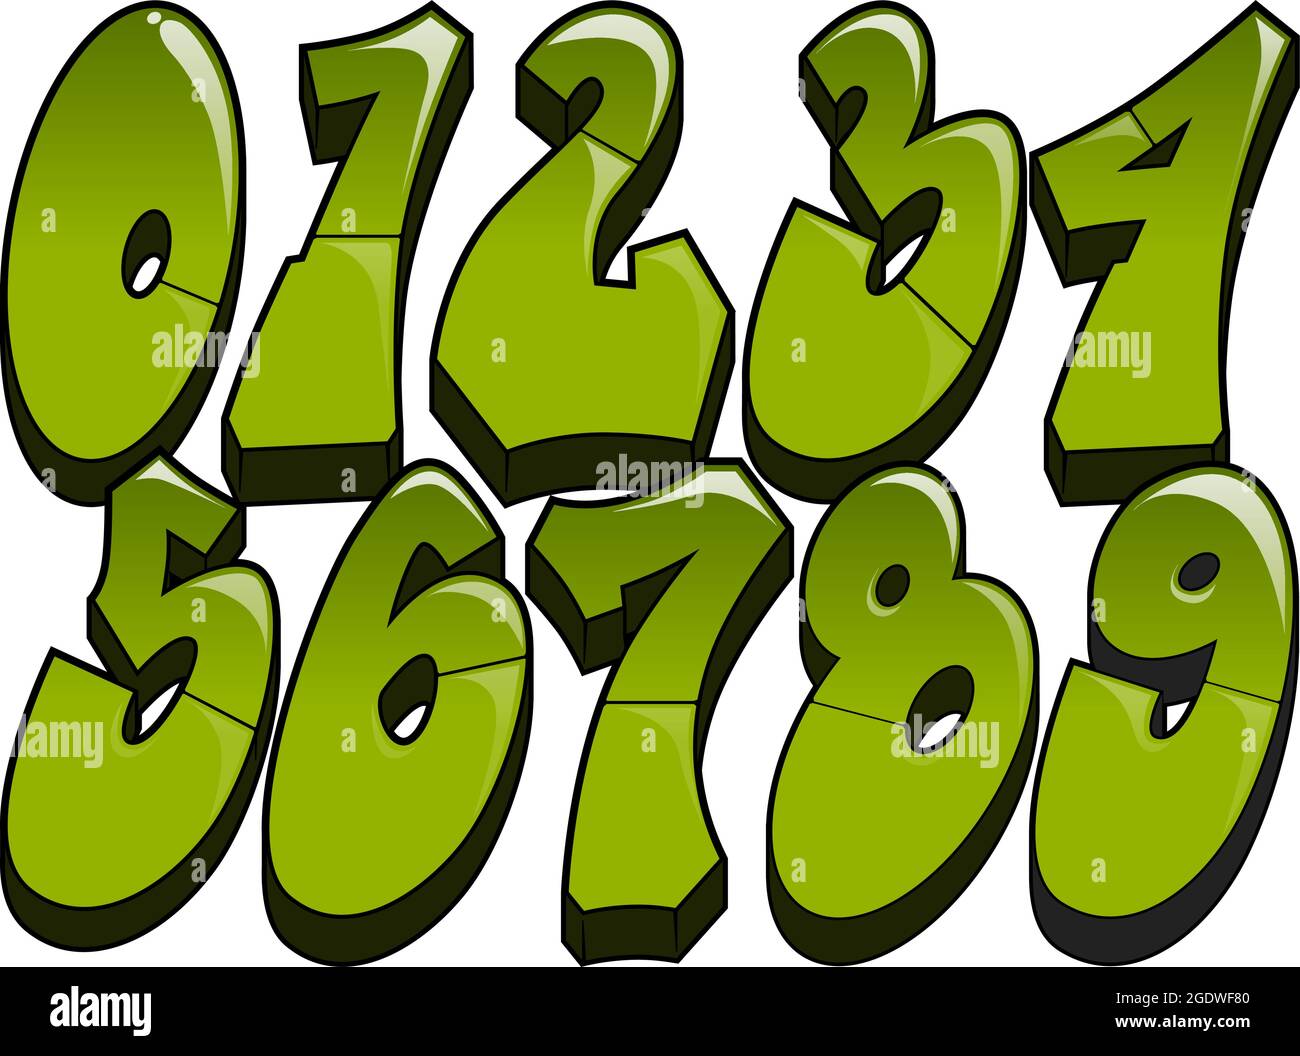 Graffiti-Zahlen lesbar glänzende Graffiti-gestylte Zahlen 0-9  Stock-Vektorgrafik - Alamy